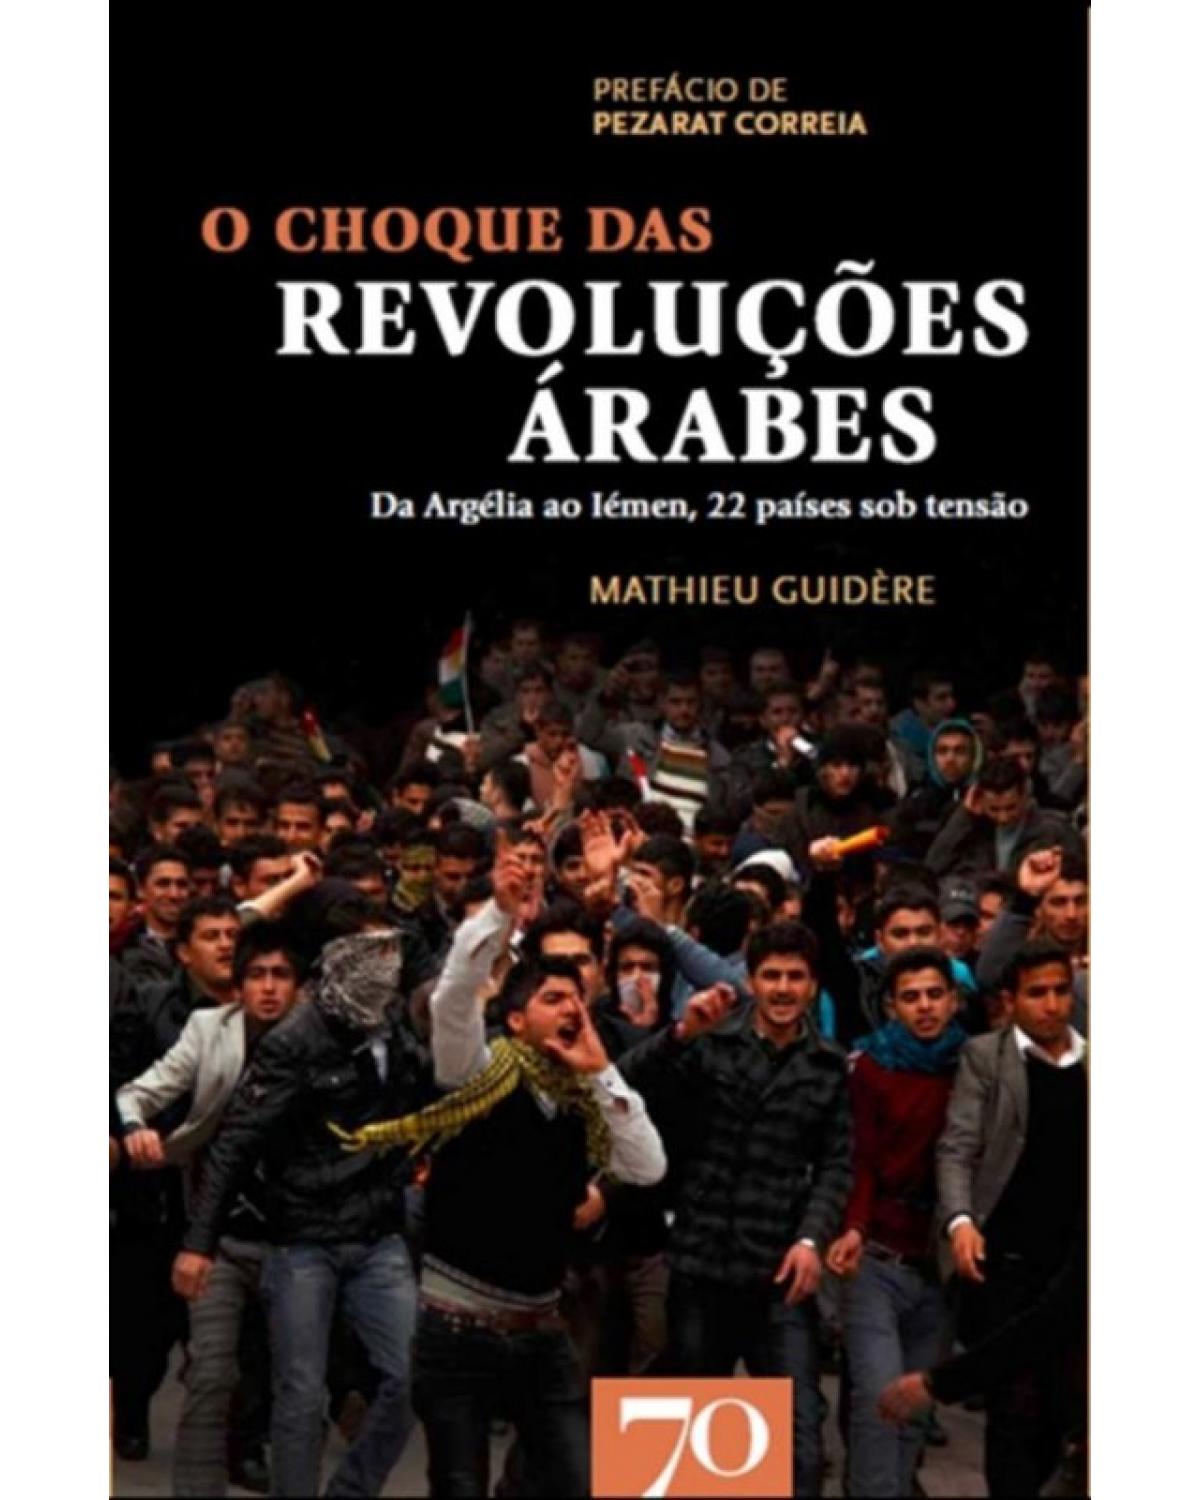 O choque das revoluções árabes - da Argélia ao Iémen, 22 países sob tensão - 1ª Edição | 2012